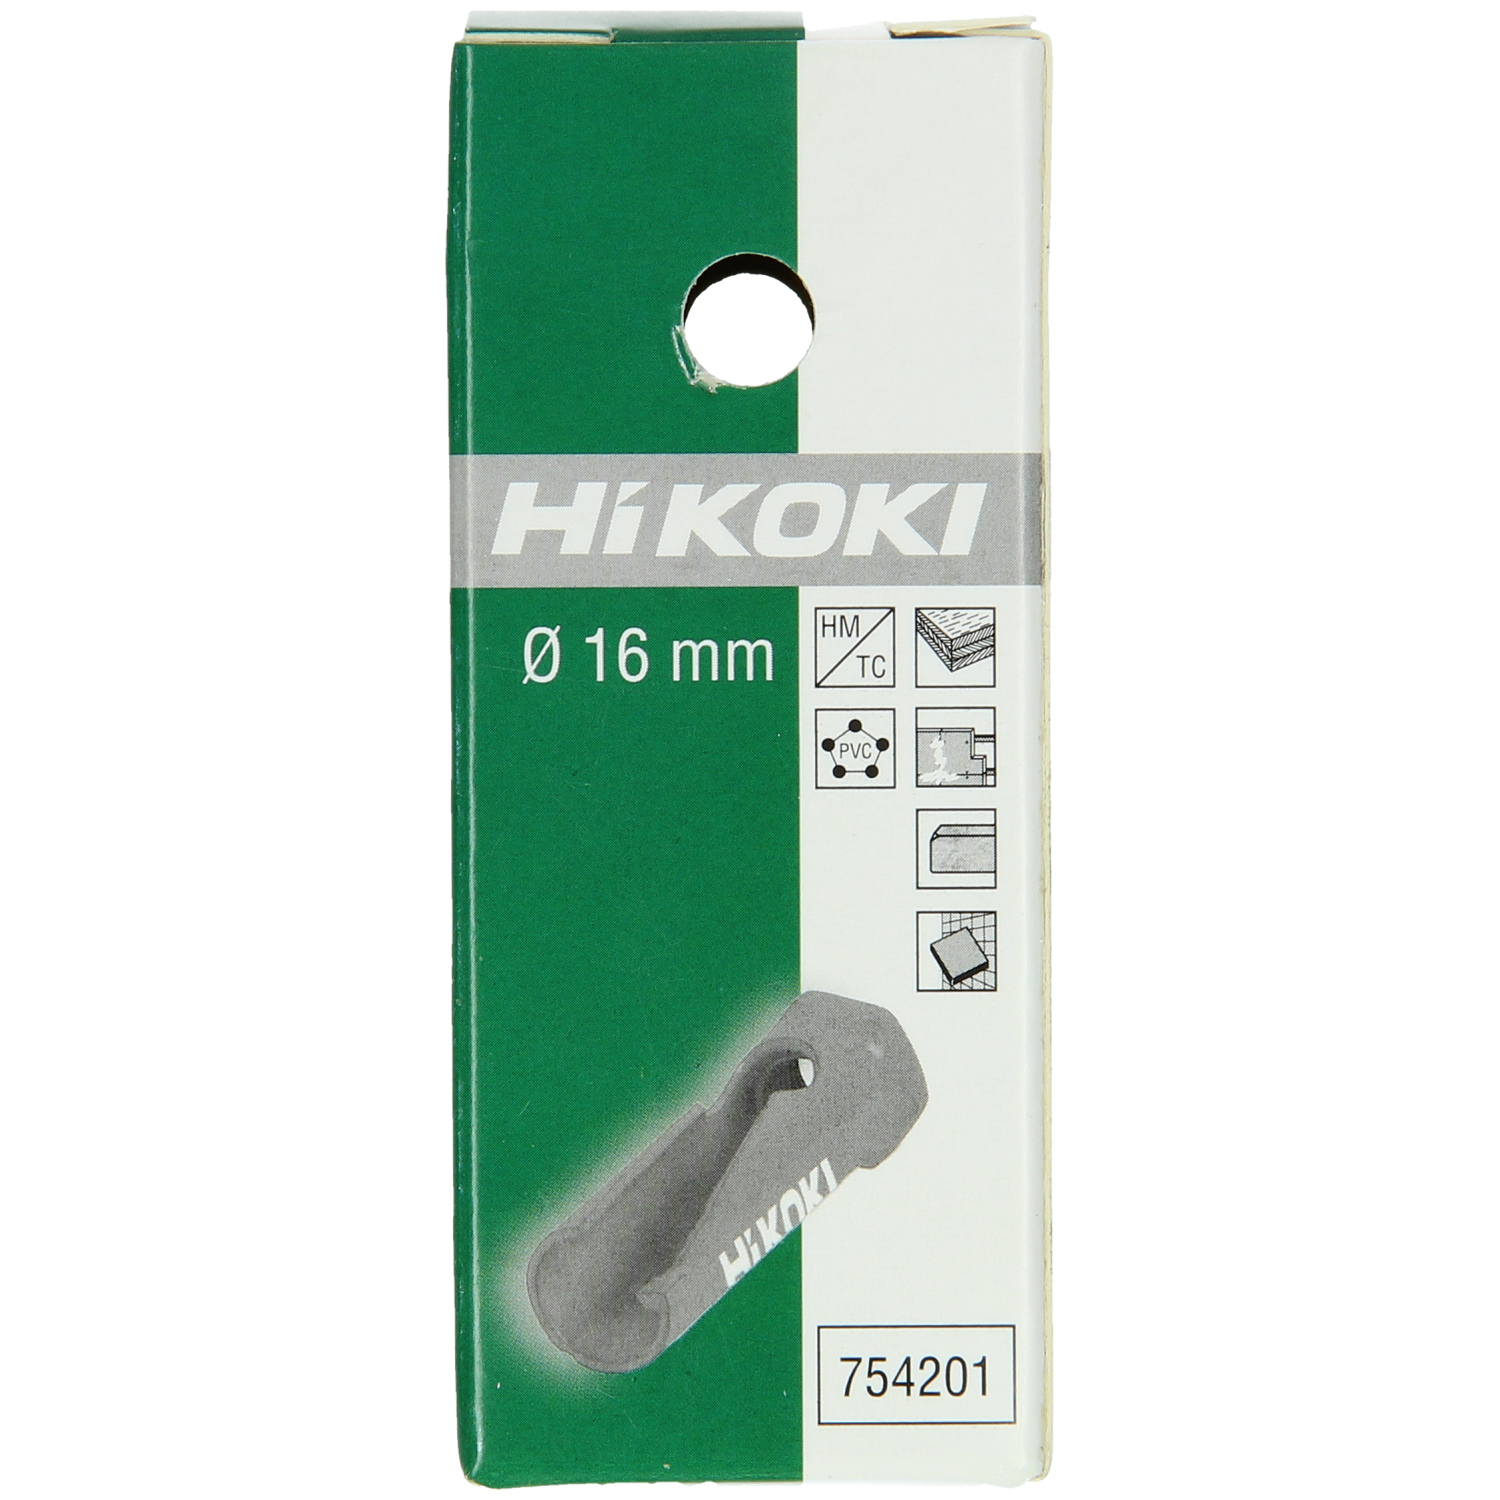 Hitachi HM-Lochsäge 16mm 754201